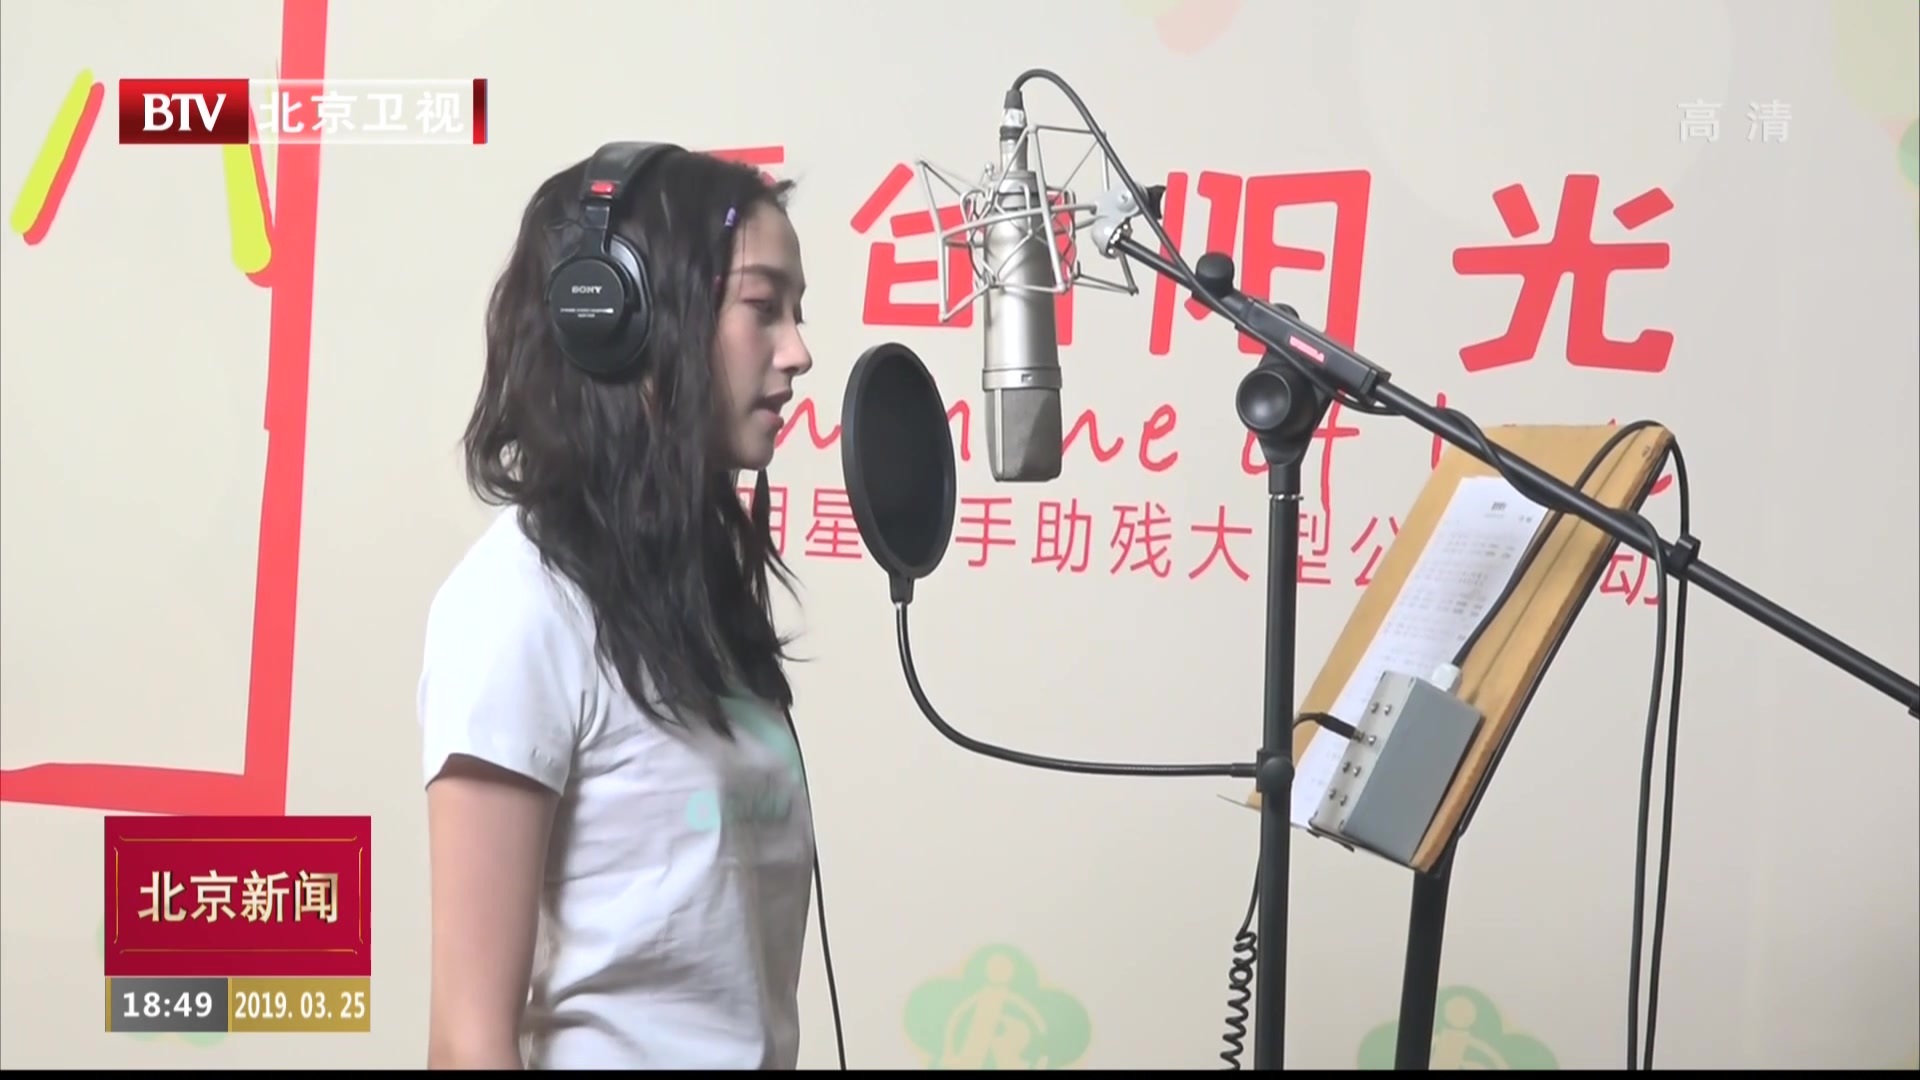 百位文艺工作者参与录制公益主题歌曲“爱的阳光”